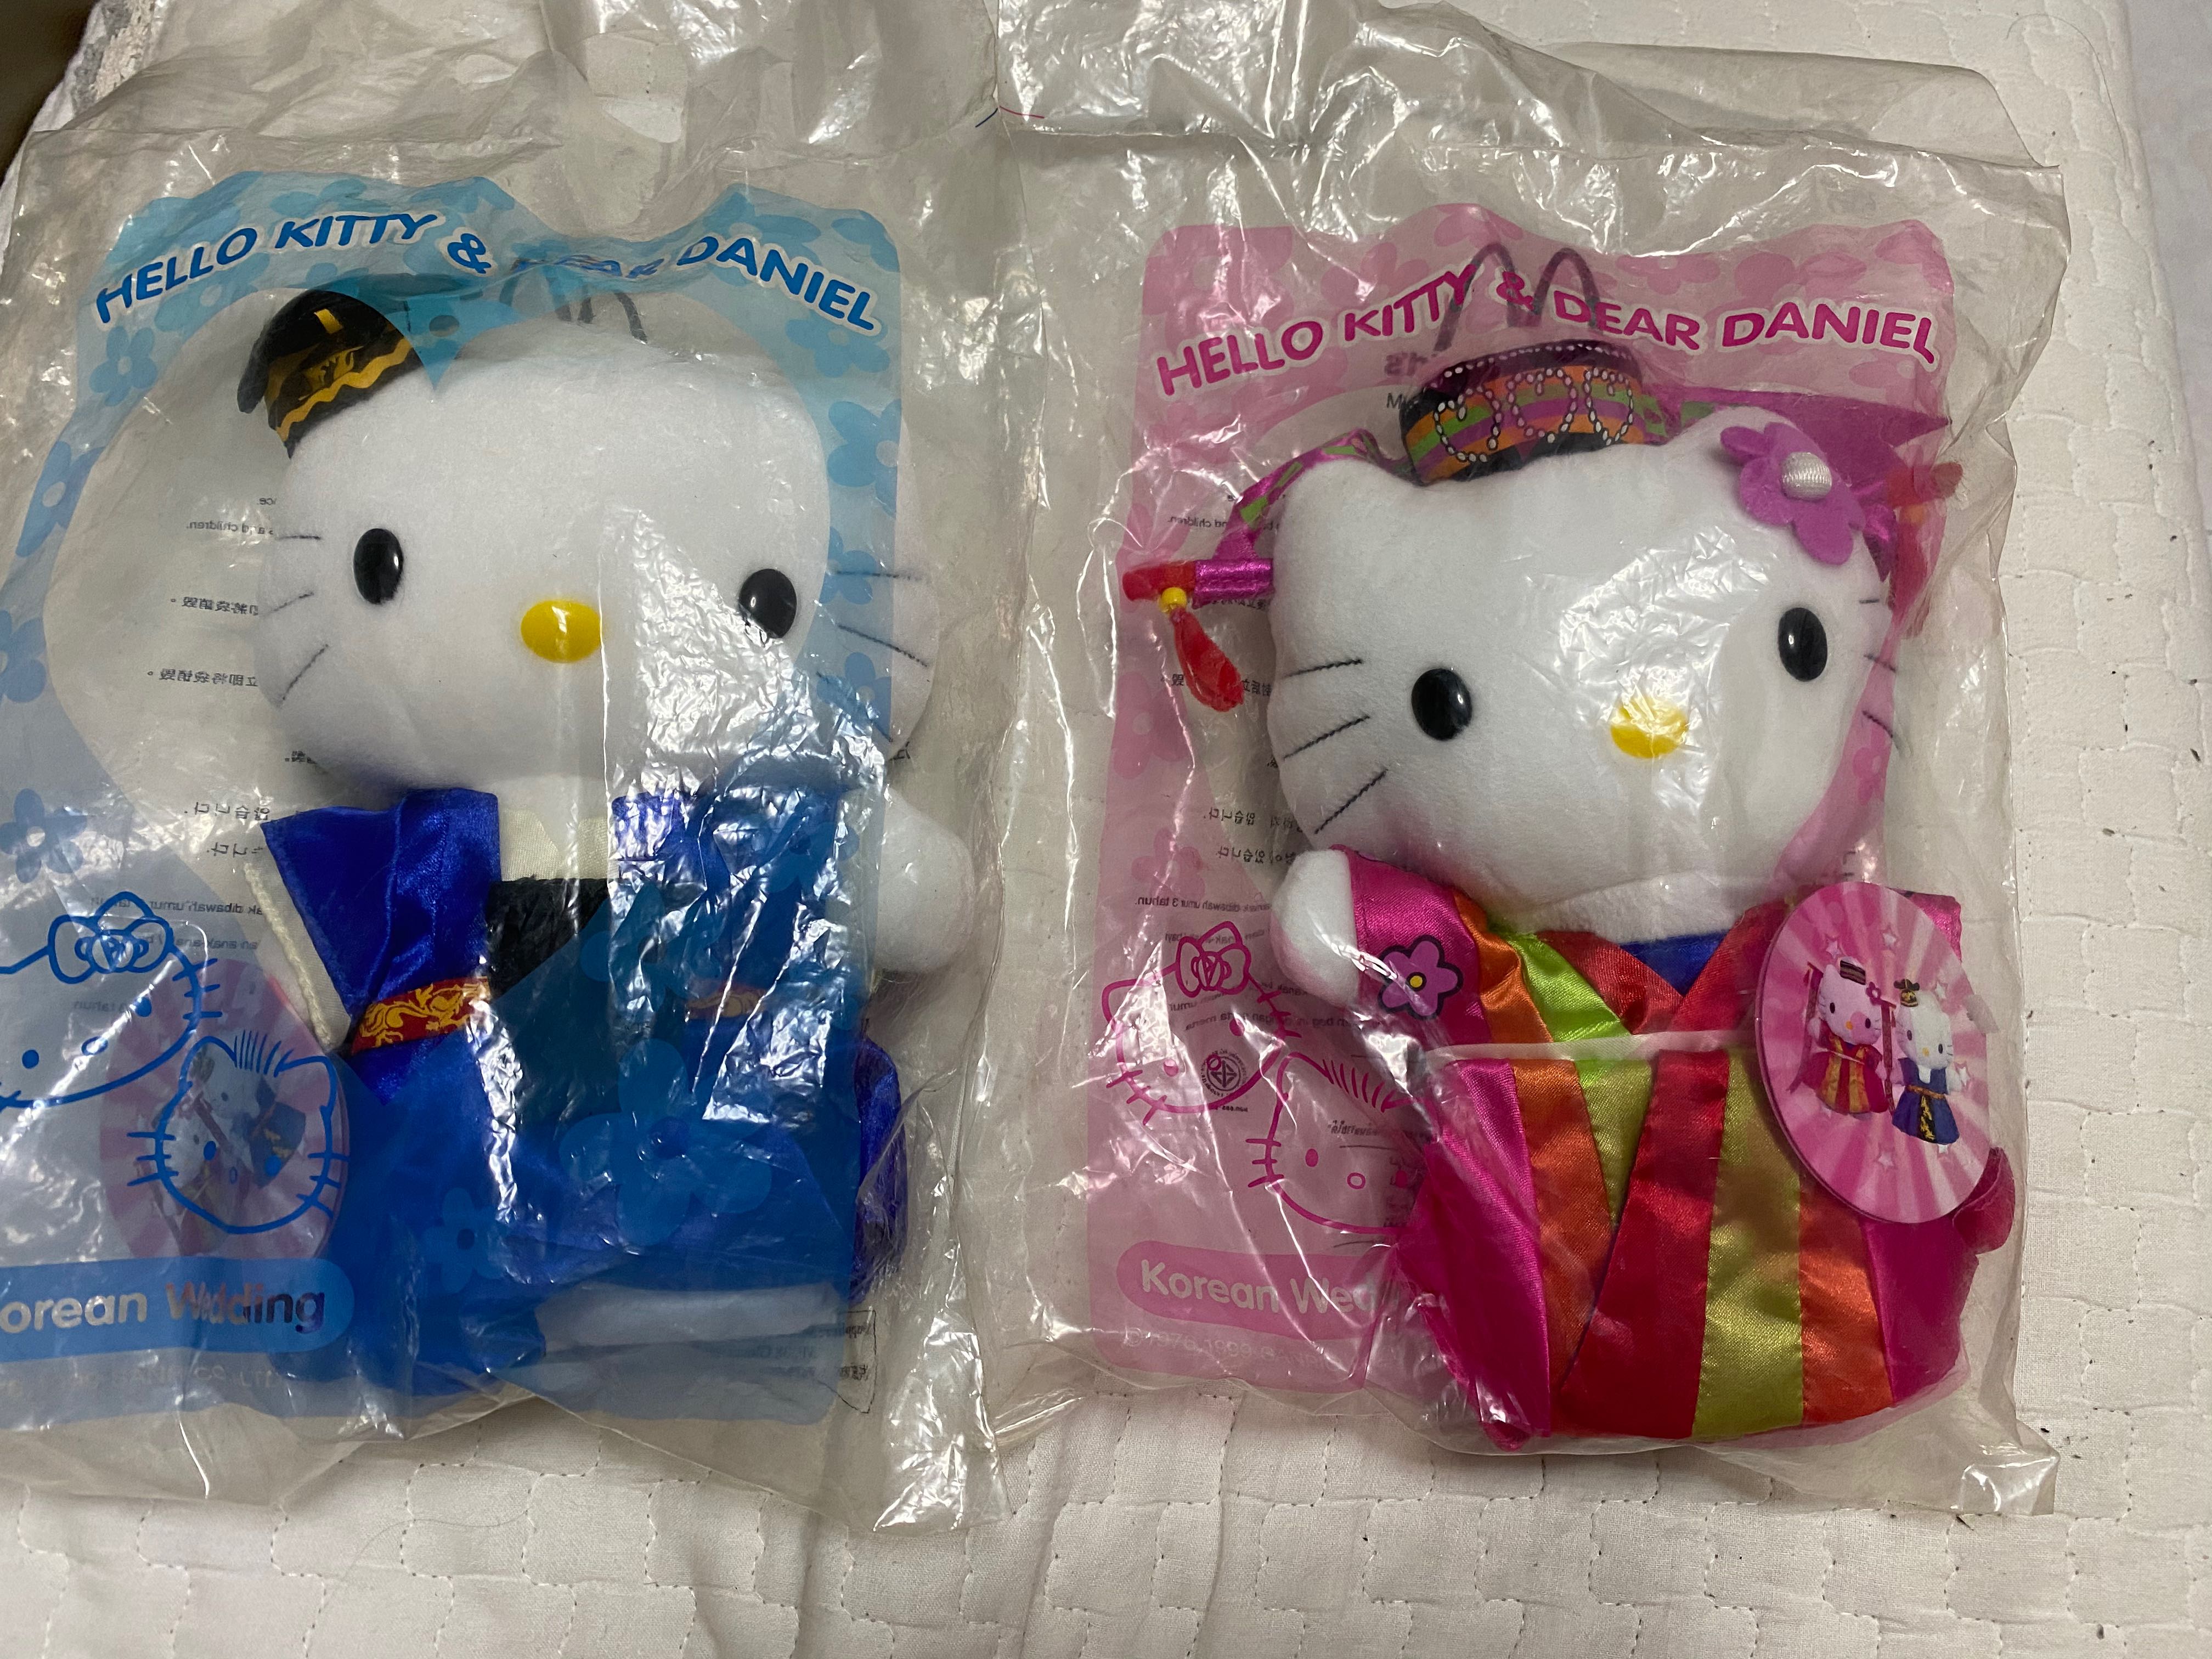 Hello Kitty Korean wedding, Hobbies & Toys, Toys & Games on Carousell